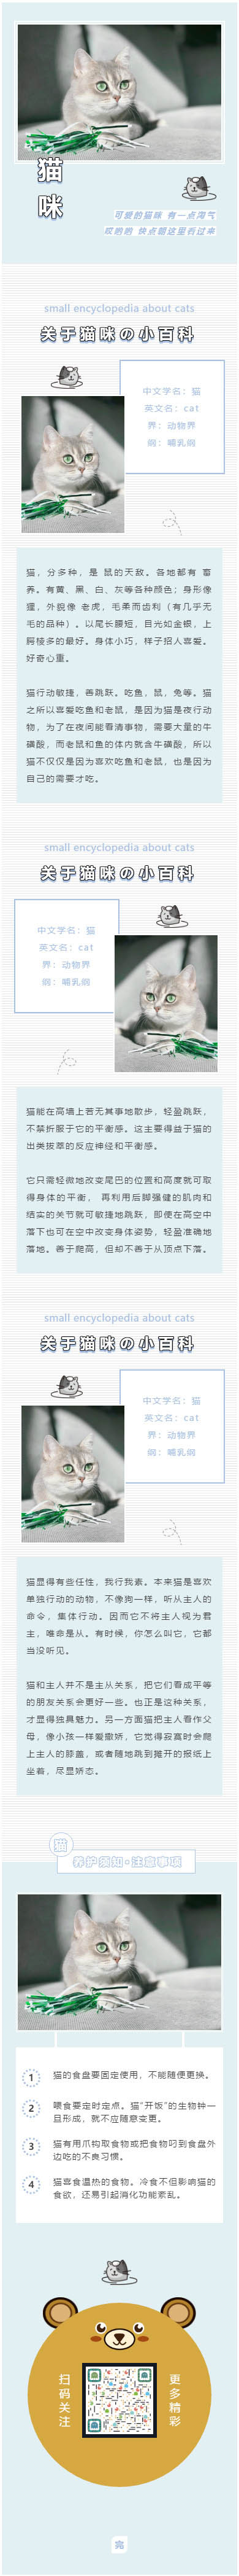 宠物模板微信公众号模板灰色条纹背景图猫咪素材